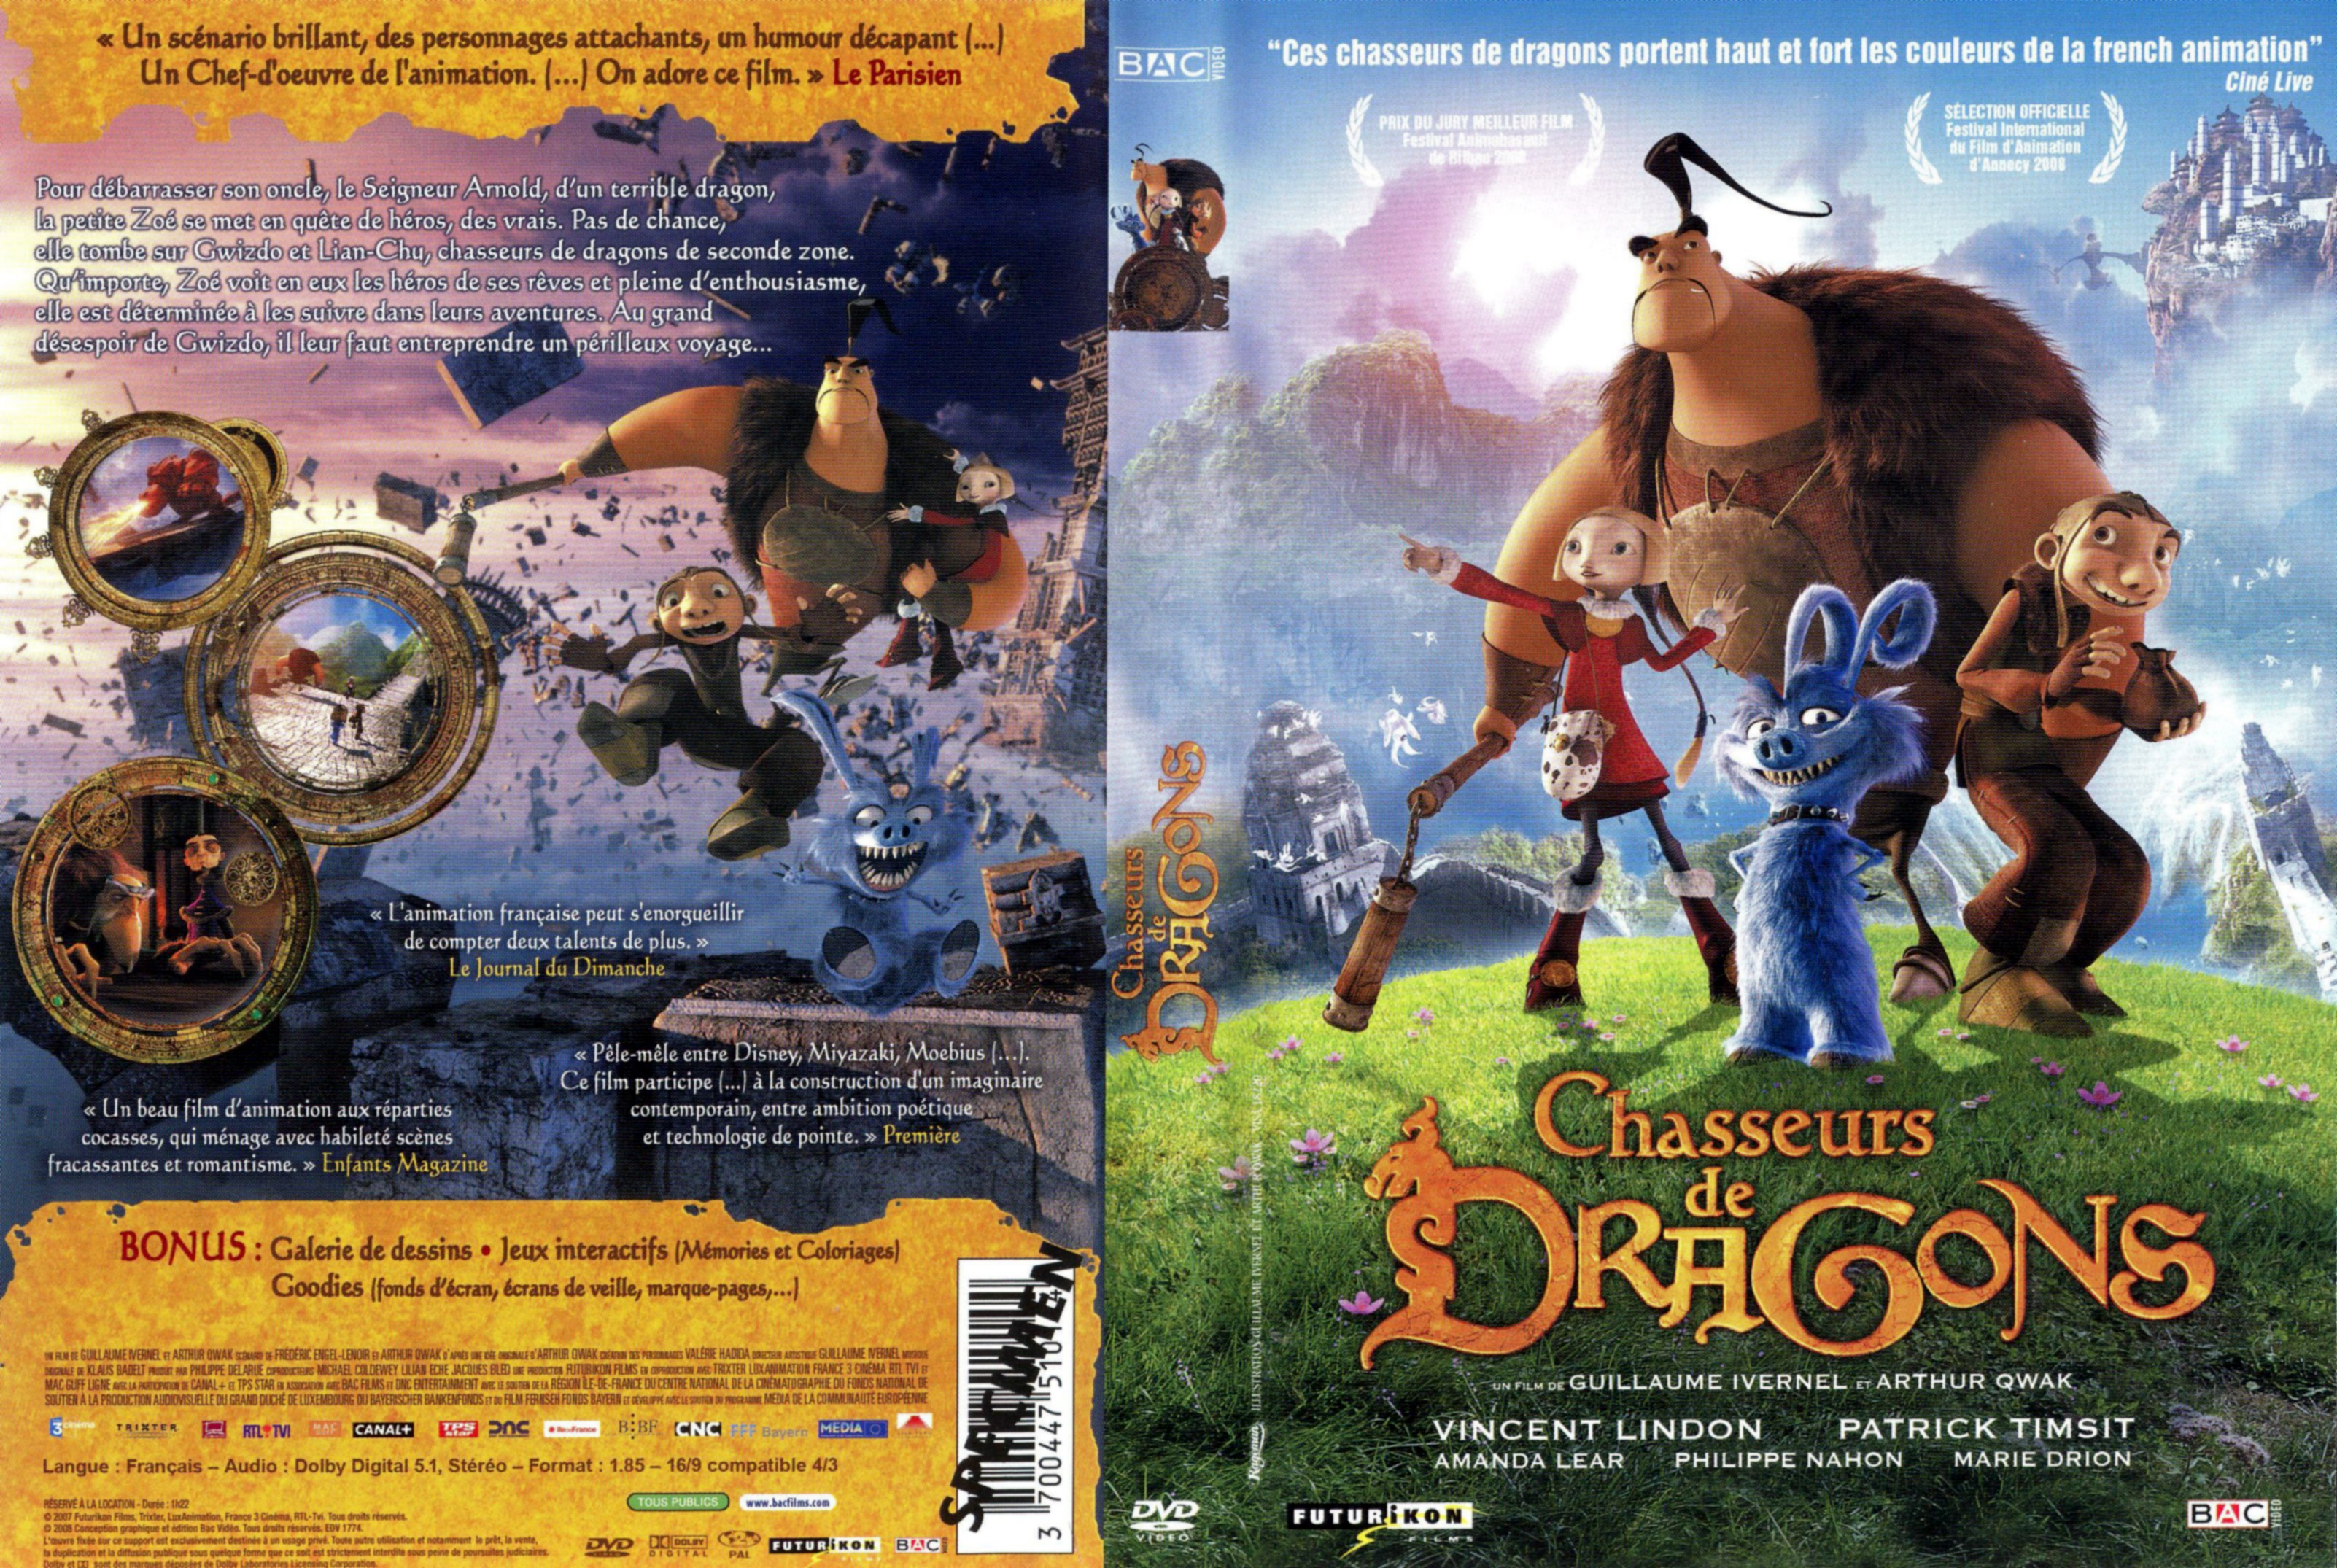 Jaquette DVD Chasseurs de dragons